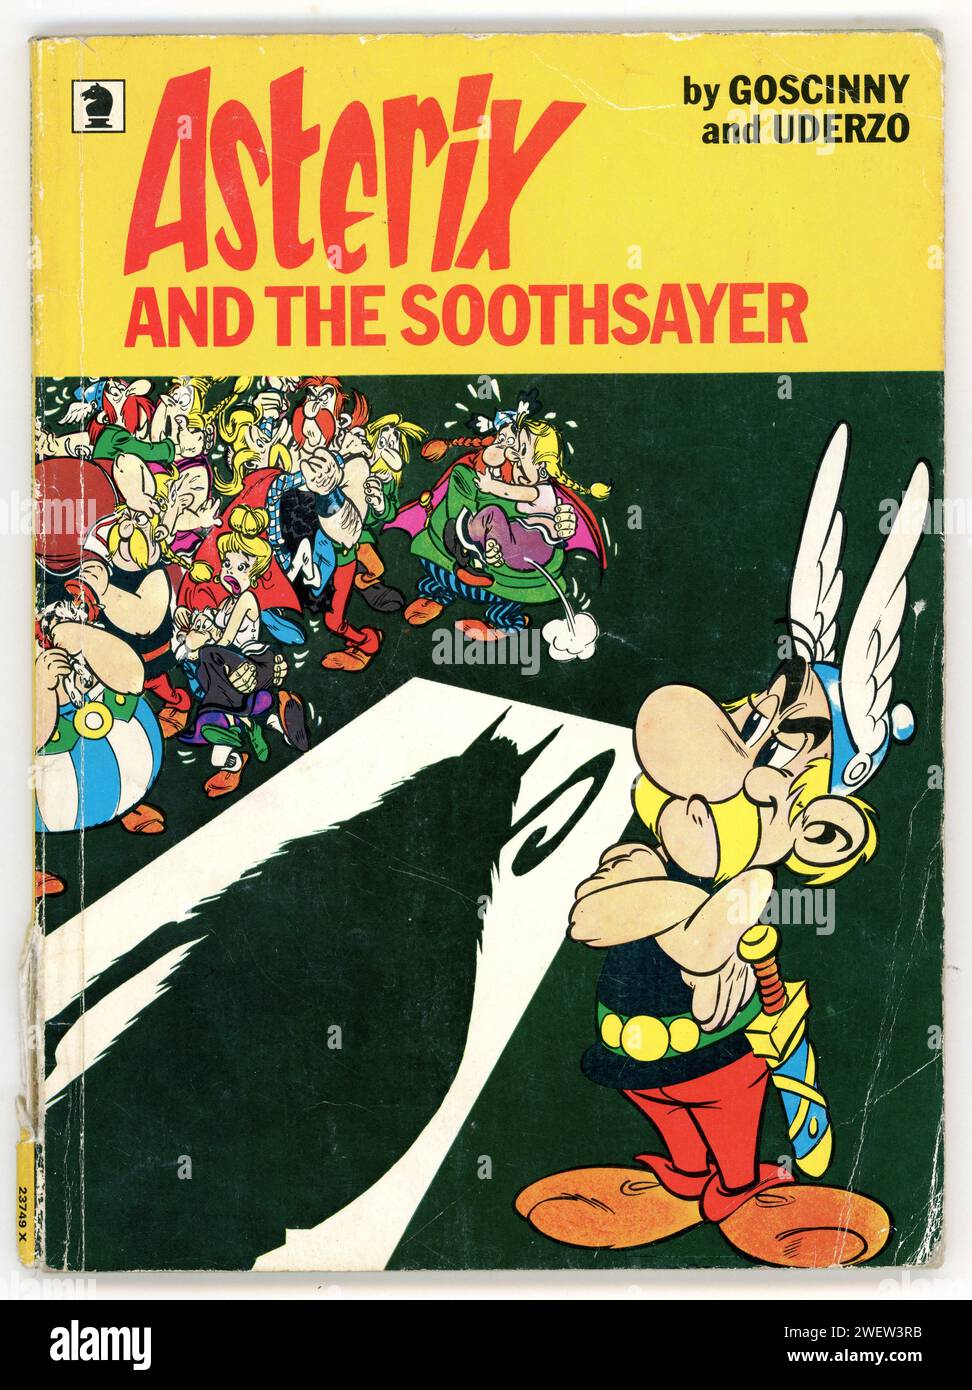 Livre de poche original d'Astérix et le Soothsayer par Goscinny et Uderzo 1975 Banque D'Images